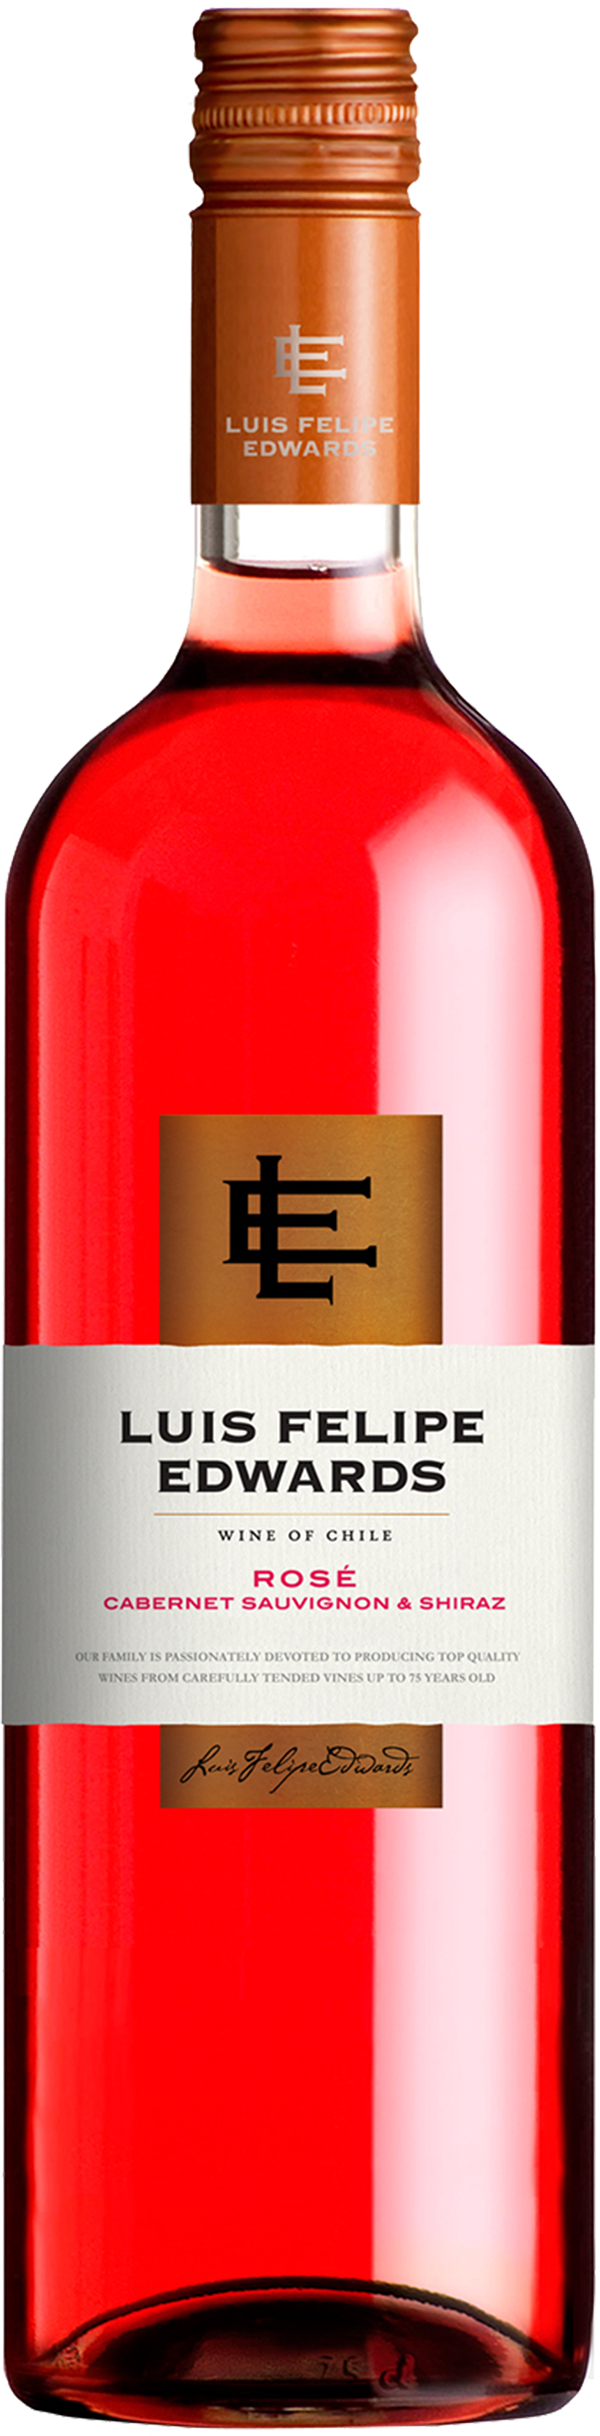 Каберне розовое сухое. Вино Луис Фелипе Эдвардс Пьюпилла. Luis Felipe Edwards Shiraz вино. Вино Пьюпилла Шираз. Луис Фелипе Эдвардс Каберне Совиньон.